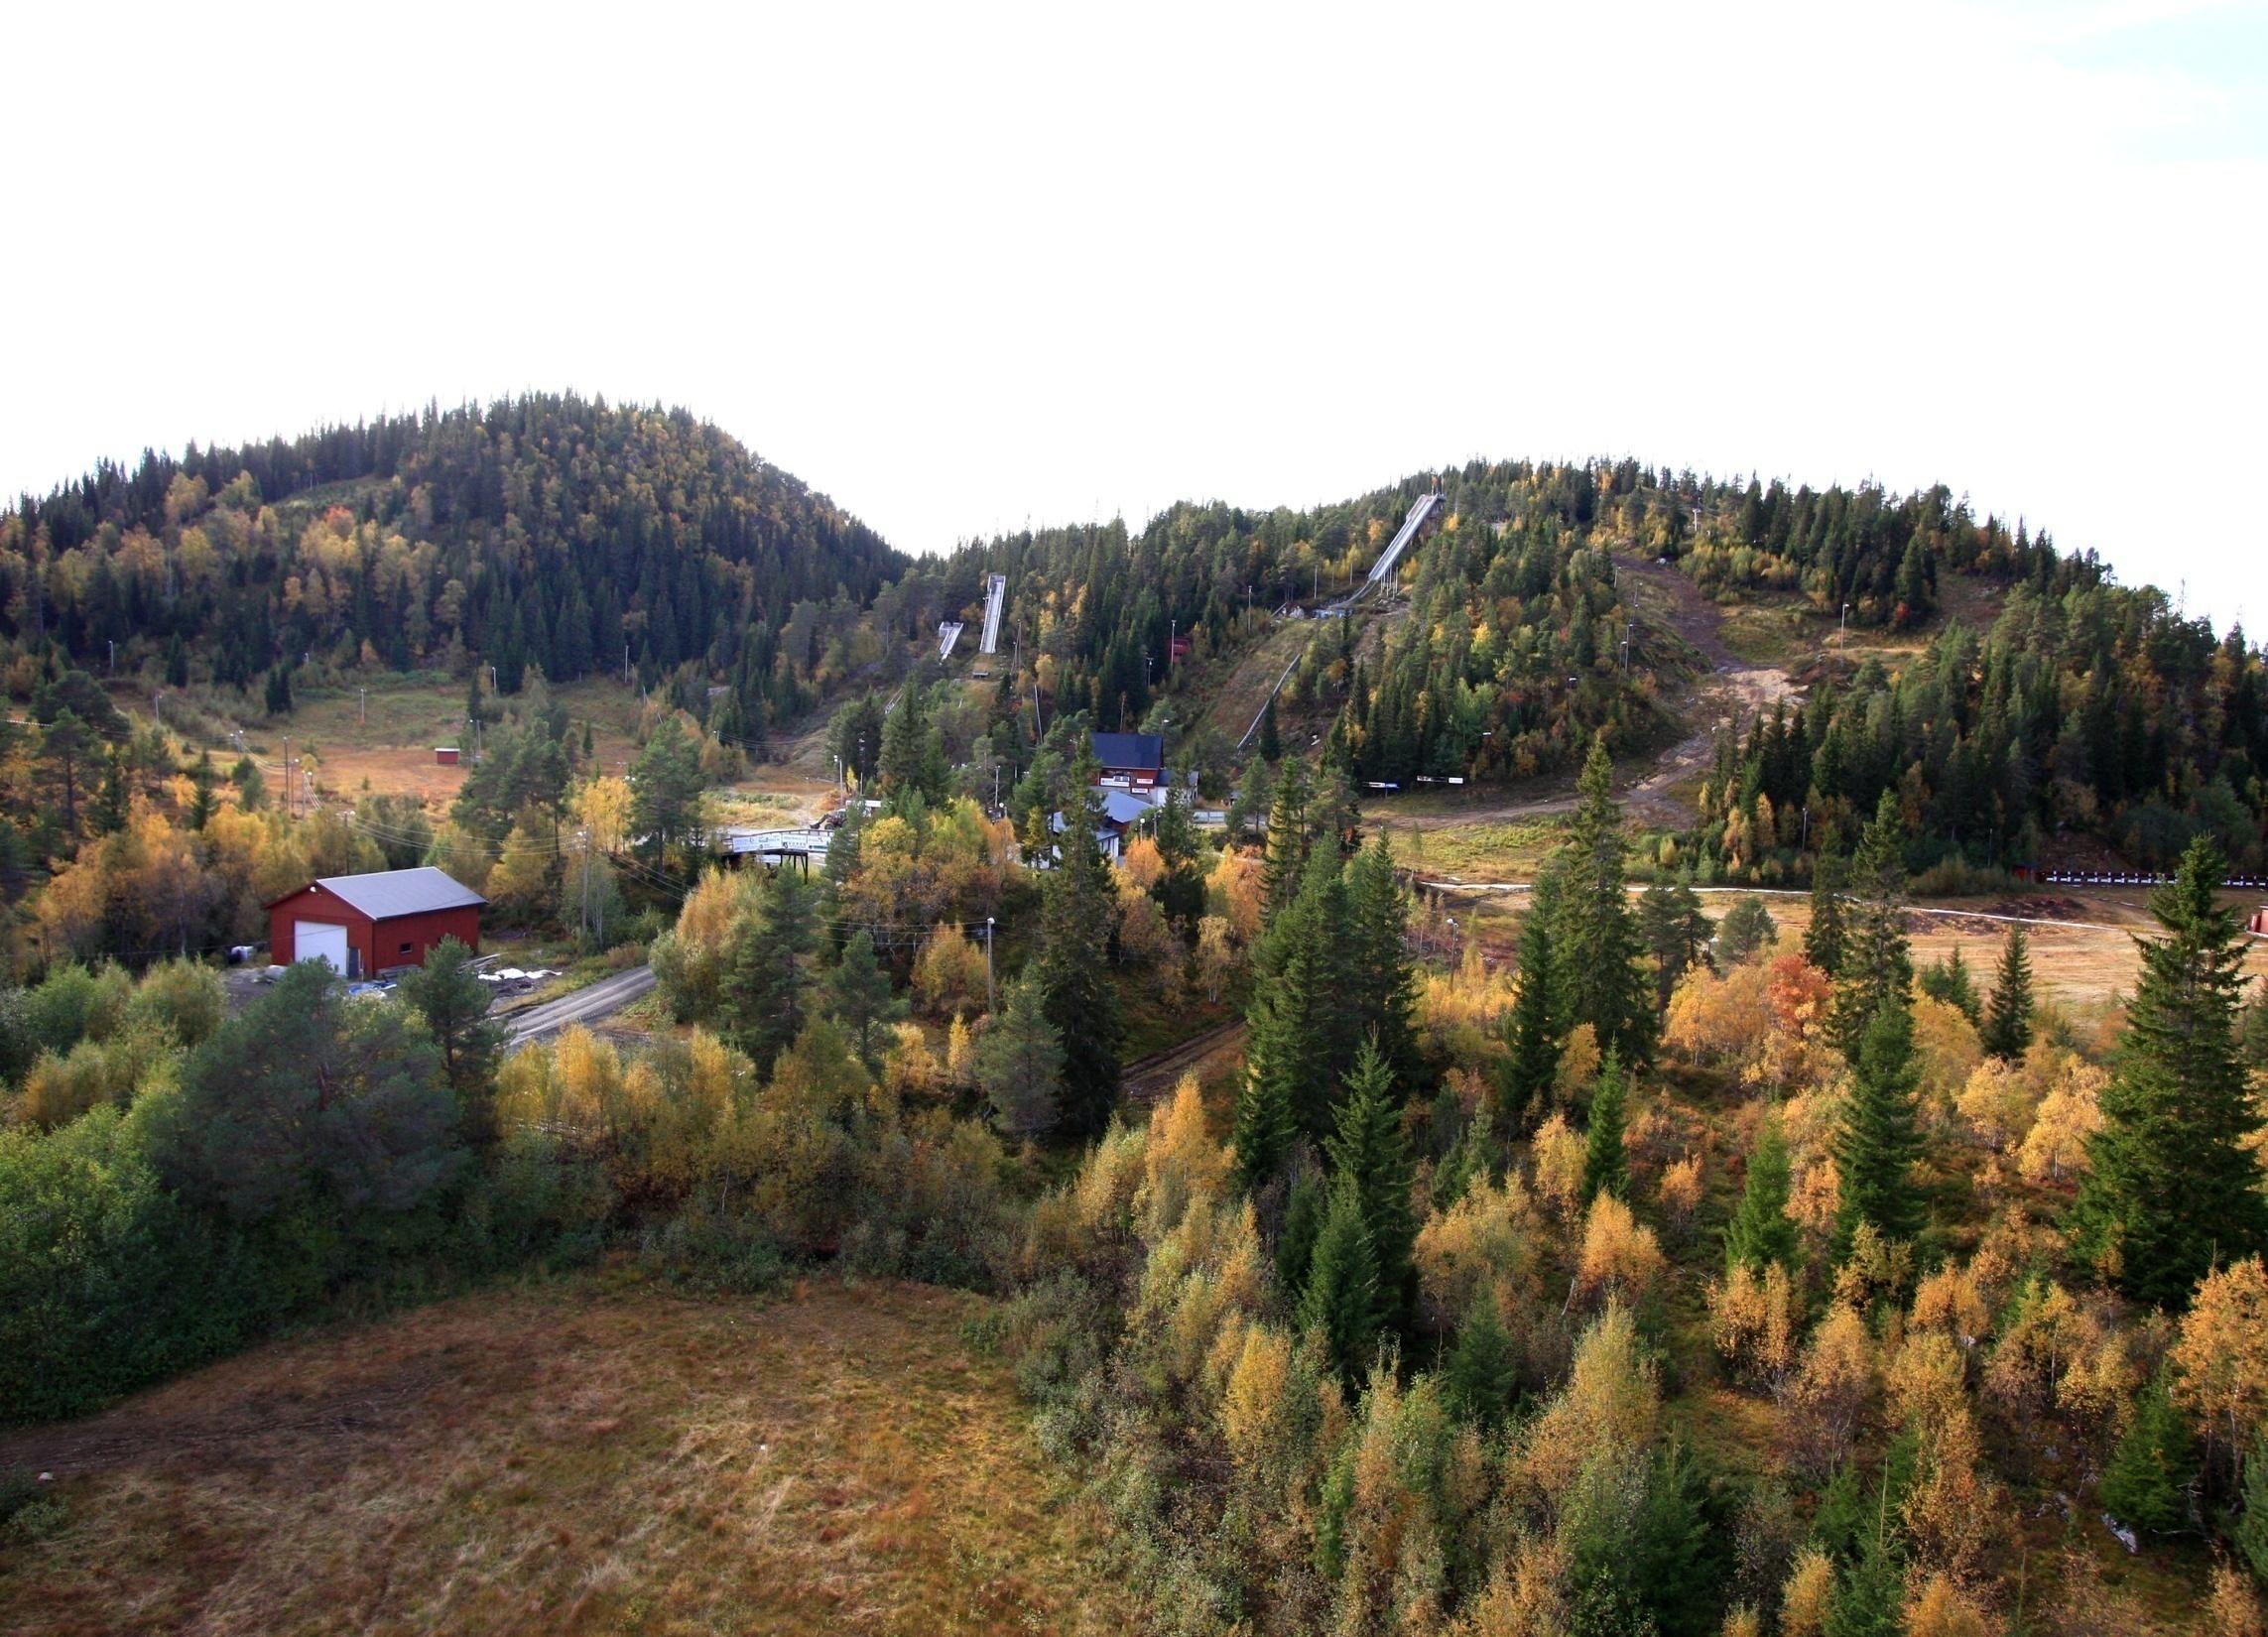 Interkommunalt anlegg Knyken skisenter er et regionalt skianlegg med tilbud som øvrige kommuner i Orkdalsregionen i dag benytter.